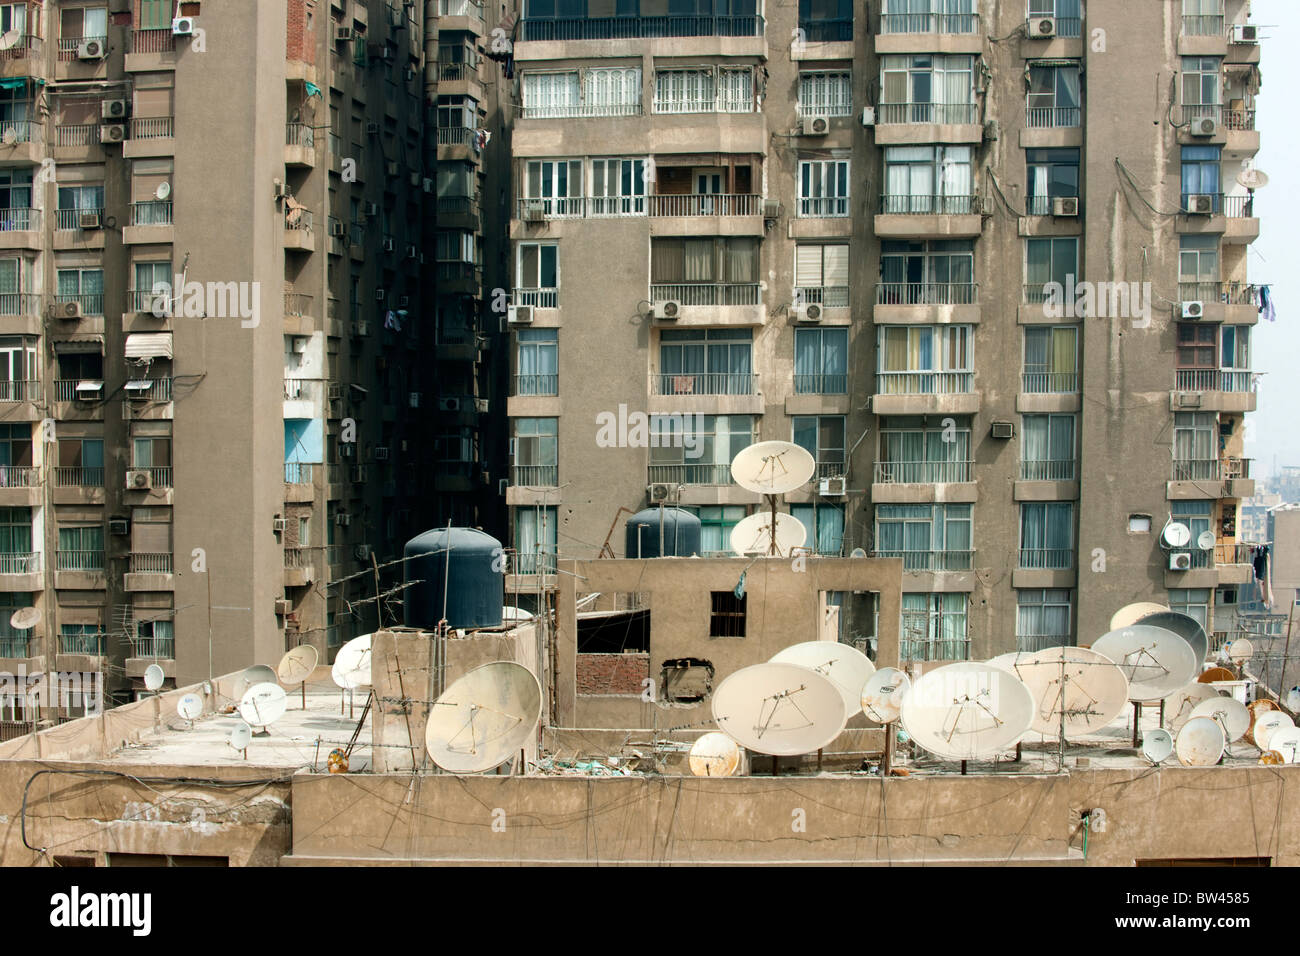 Egypt, Kairo, Insel Gezira, Architektur in Zamalek, Blick vom Hotel Om Kolthoom Stock Photo